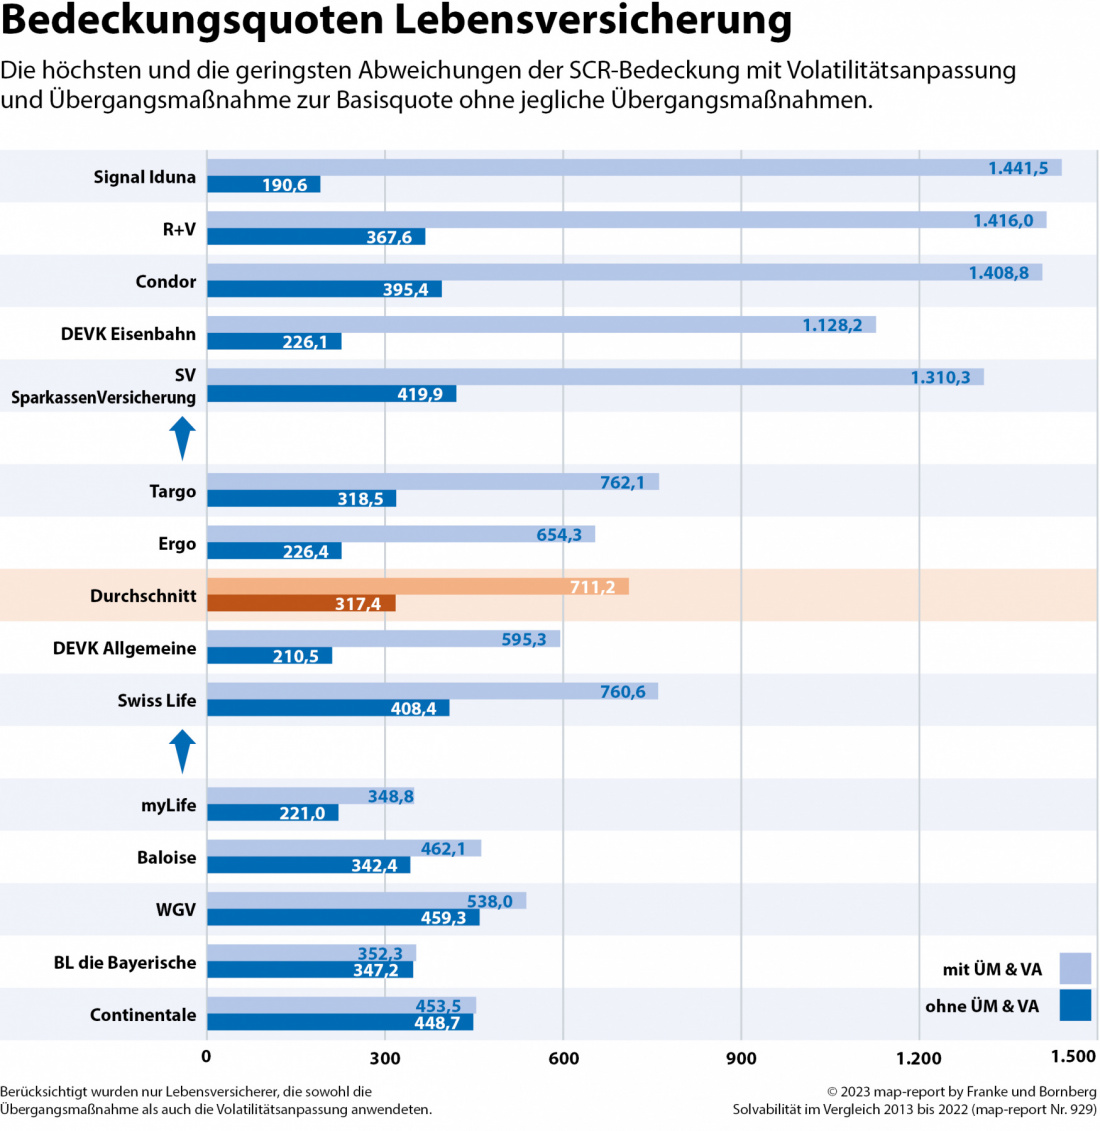 Franke und Bornberg map-report 929 - Solvabilität im Vergleich - Bedeckungsquoten Lebensversicherung